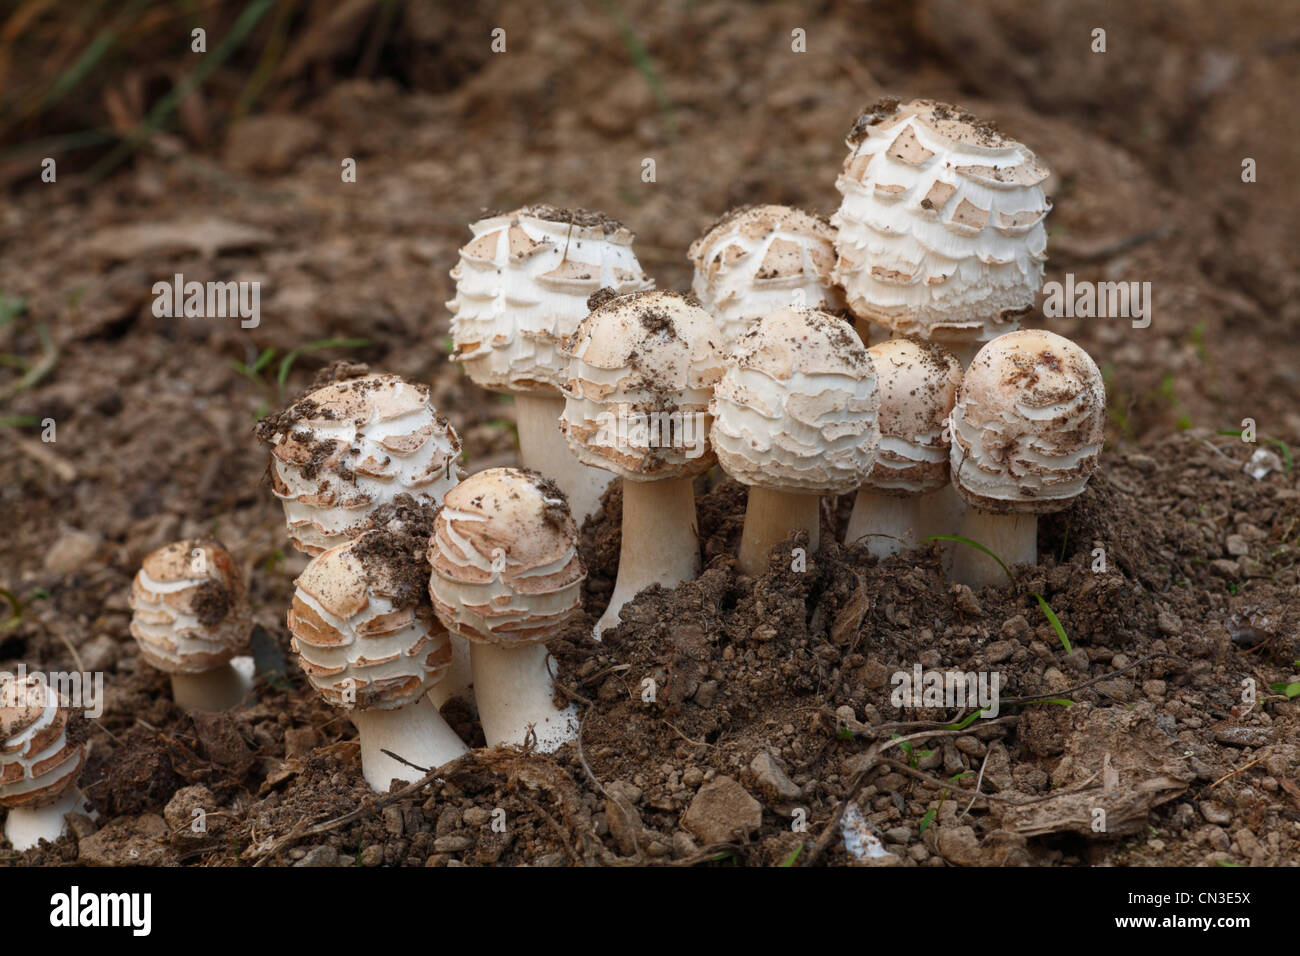 Shaggy sombrilla hongos (Macrolepiota rhacodes) grupo de órganos de fructificación surgidos desde el suelo. Powys, Gales. De octubre. Foto de stock